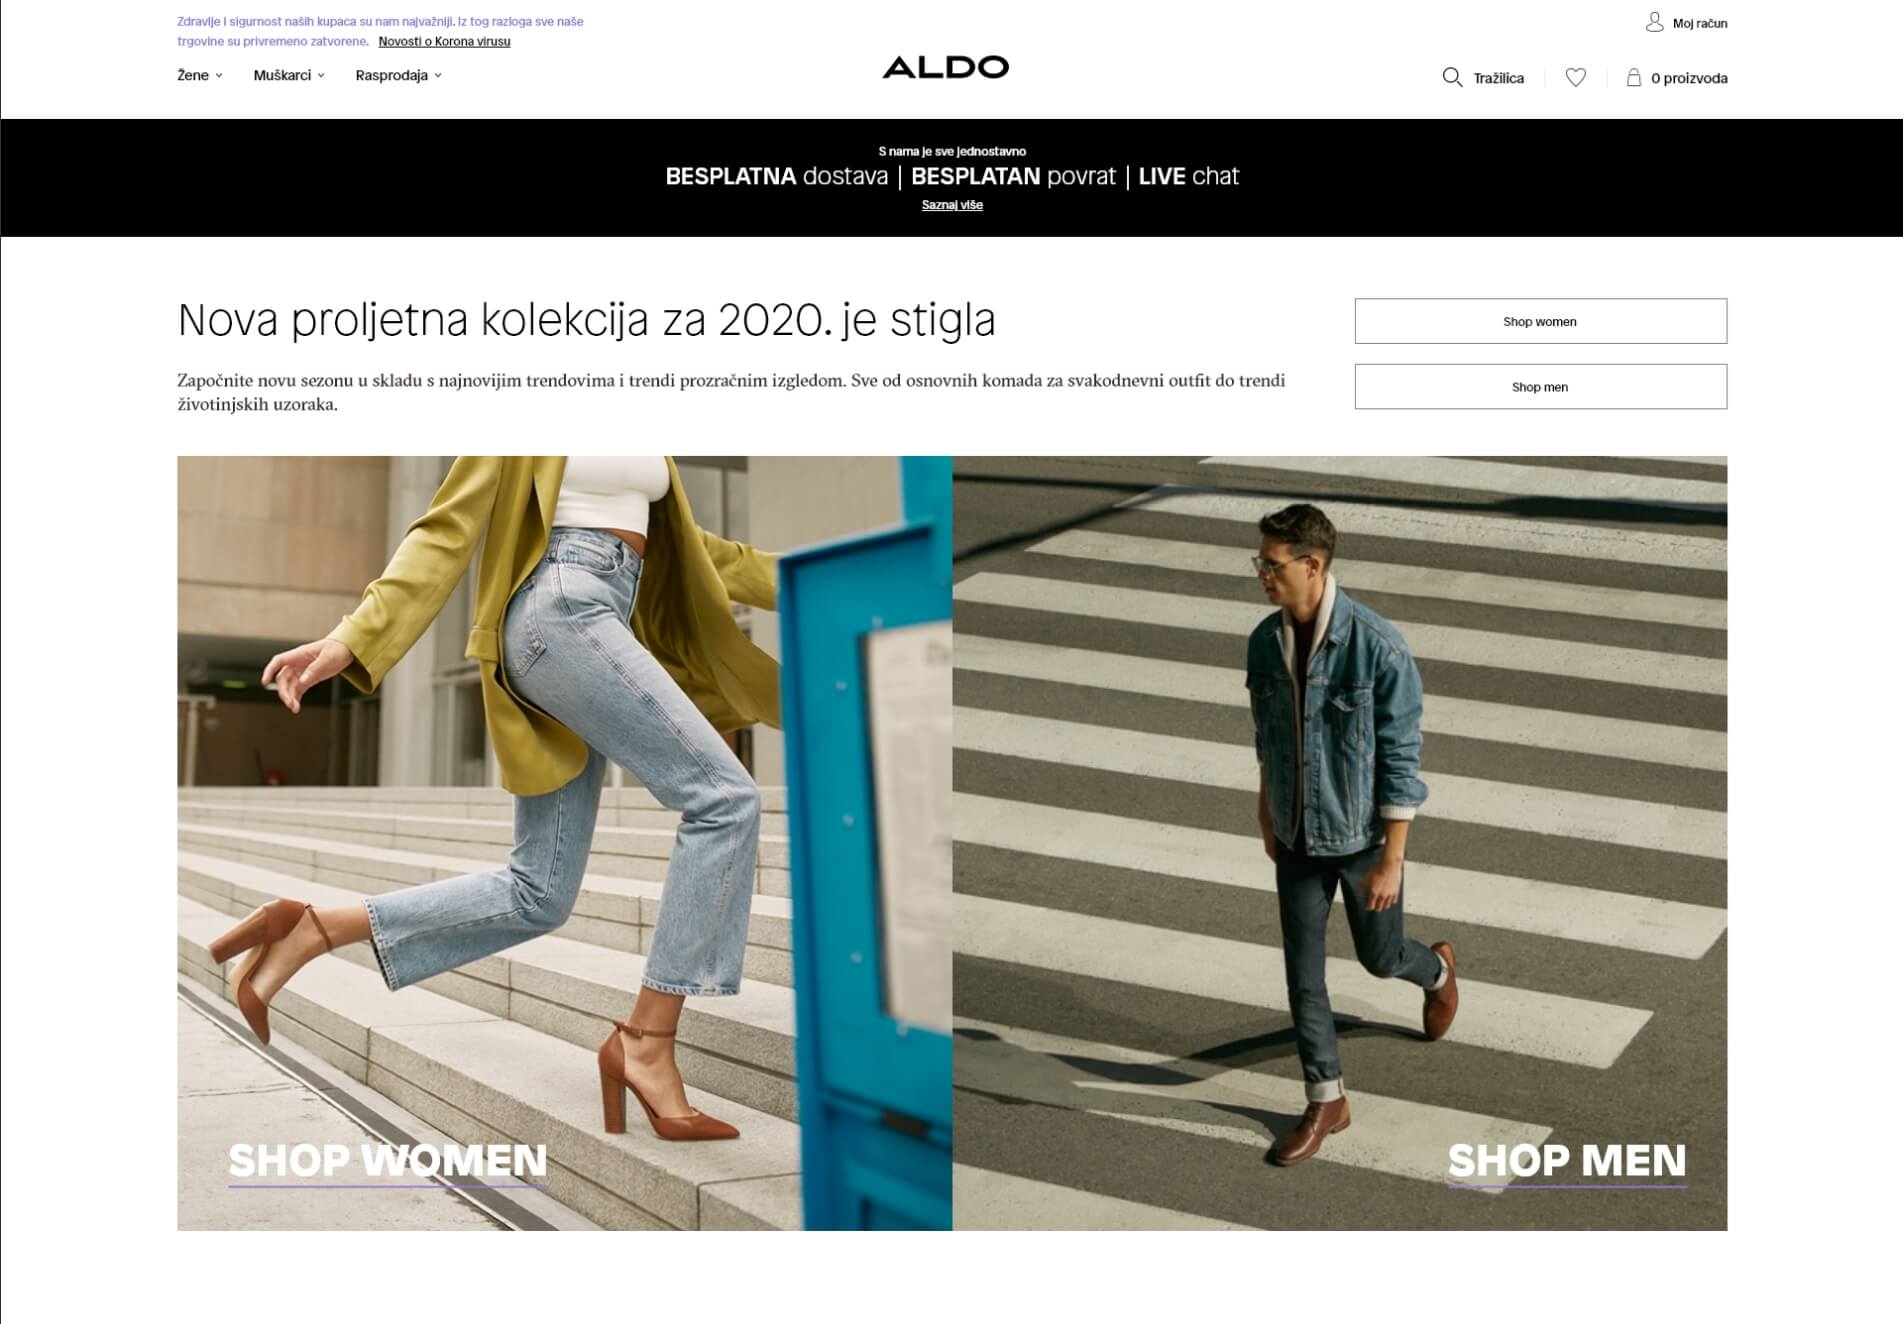 ALDO Shoes - Croatia